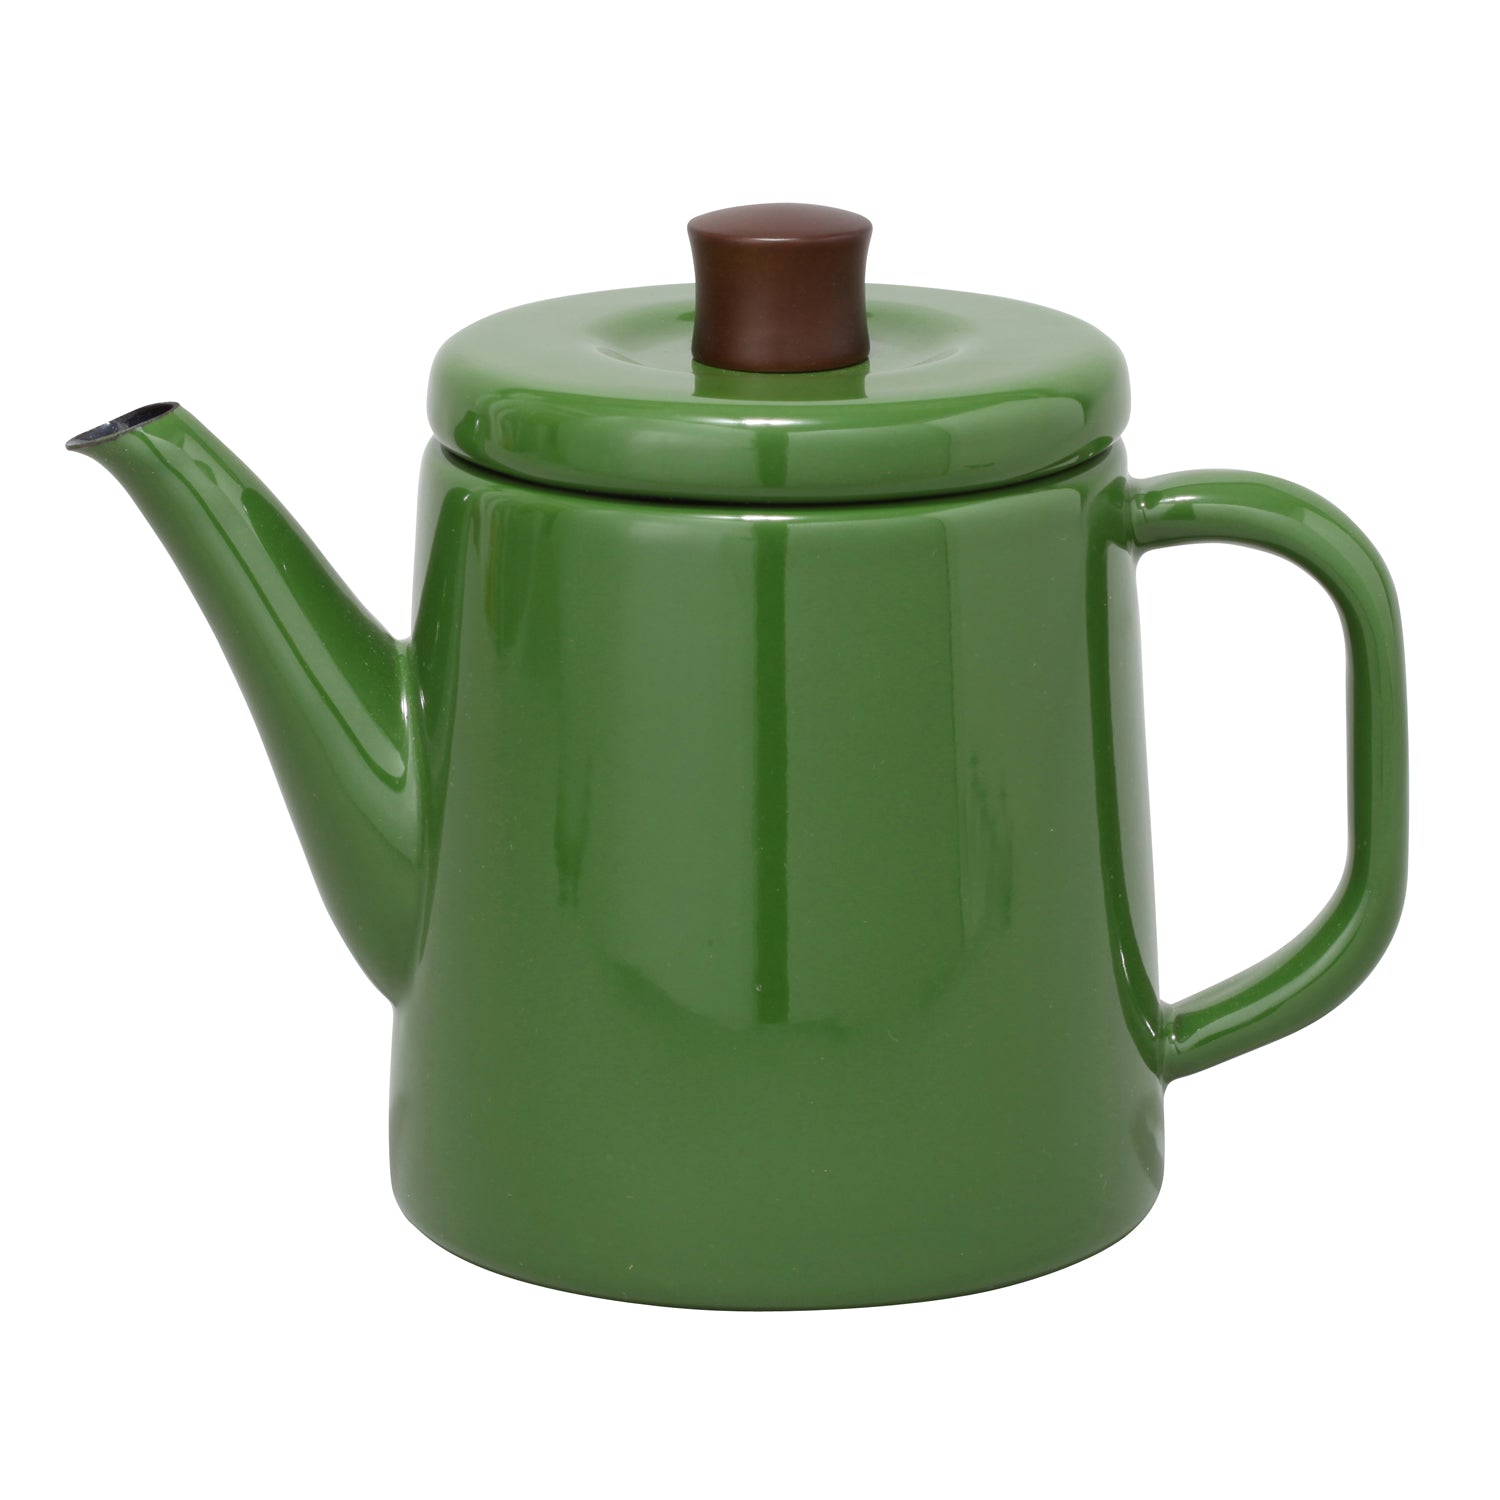 Enamel Teapot / Kettle (Green)